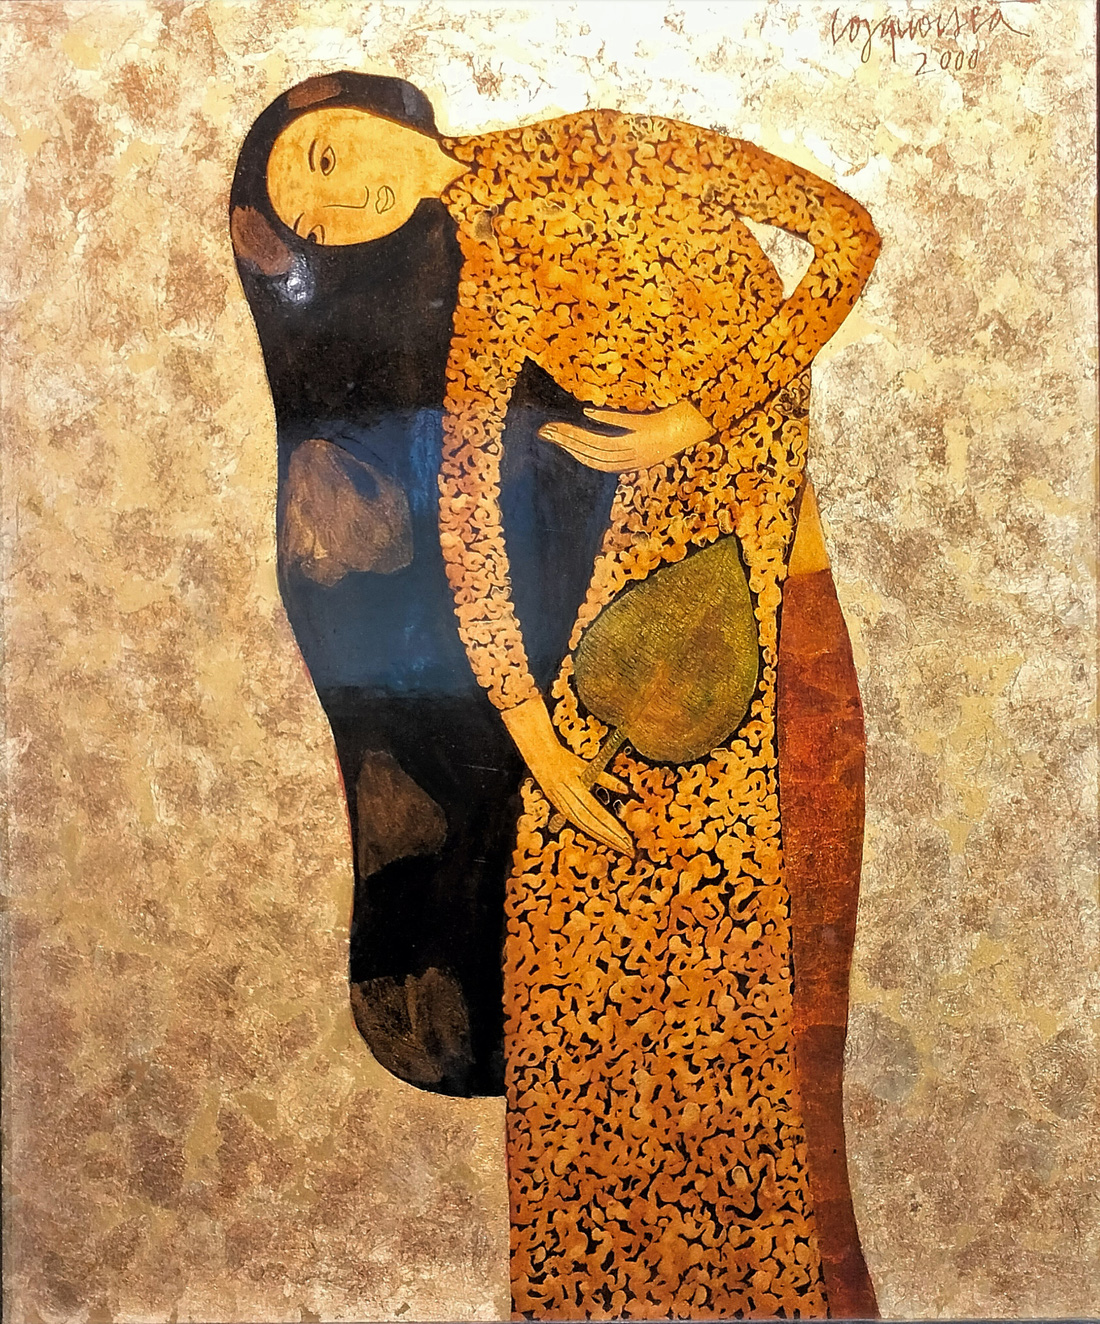 Tranh sơn mài &quot;Thiếu nữ Hà Nội&quot; của họa sĩ Công Quốc Hà. Sinh năm 1955, ông nổi tiếng với những nhân vật nữ mang vóc dáng thanh lịch, nằm trong nhóm họa sĩ góp phần làm sống lại nghệ thuật sơn mài truyền thống với diện mạo hiện đại trong mắt quốc tế.